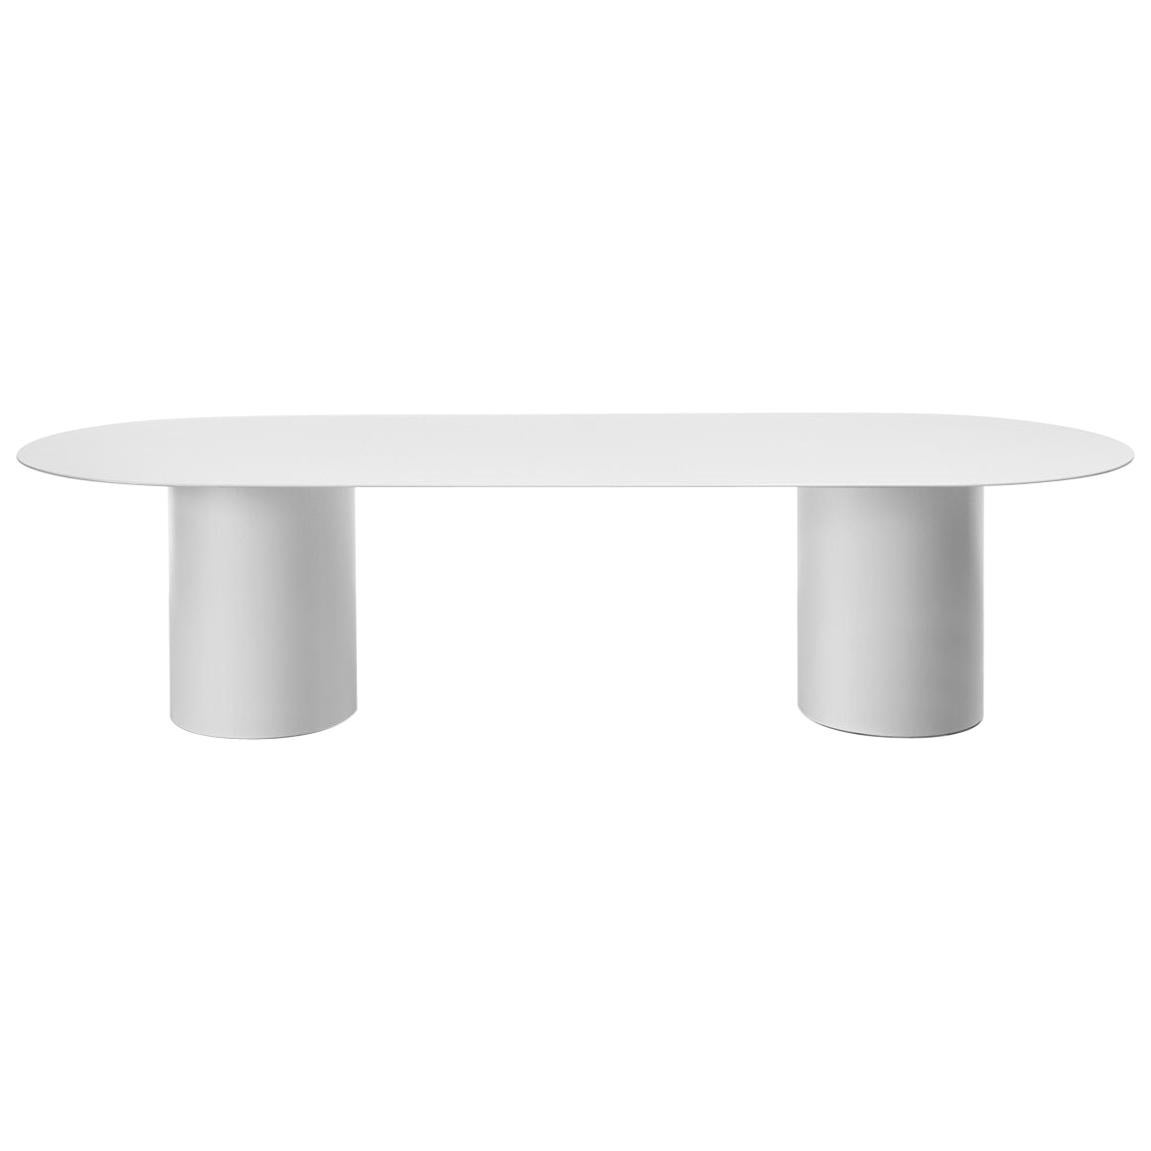 Desalto MM8 White Table Designed by Guglielmo Poletti